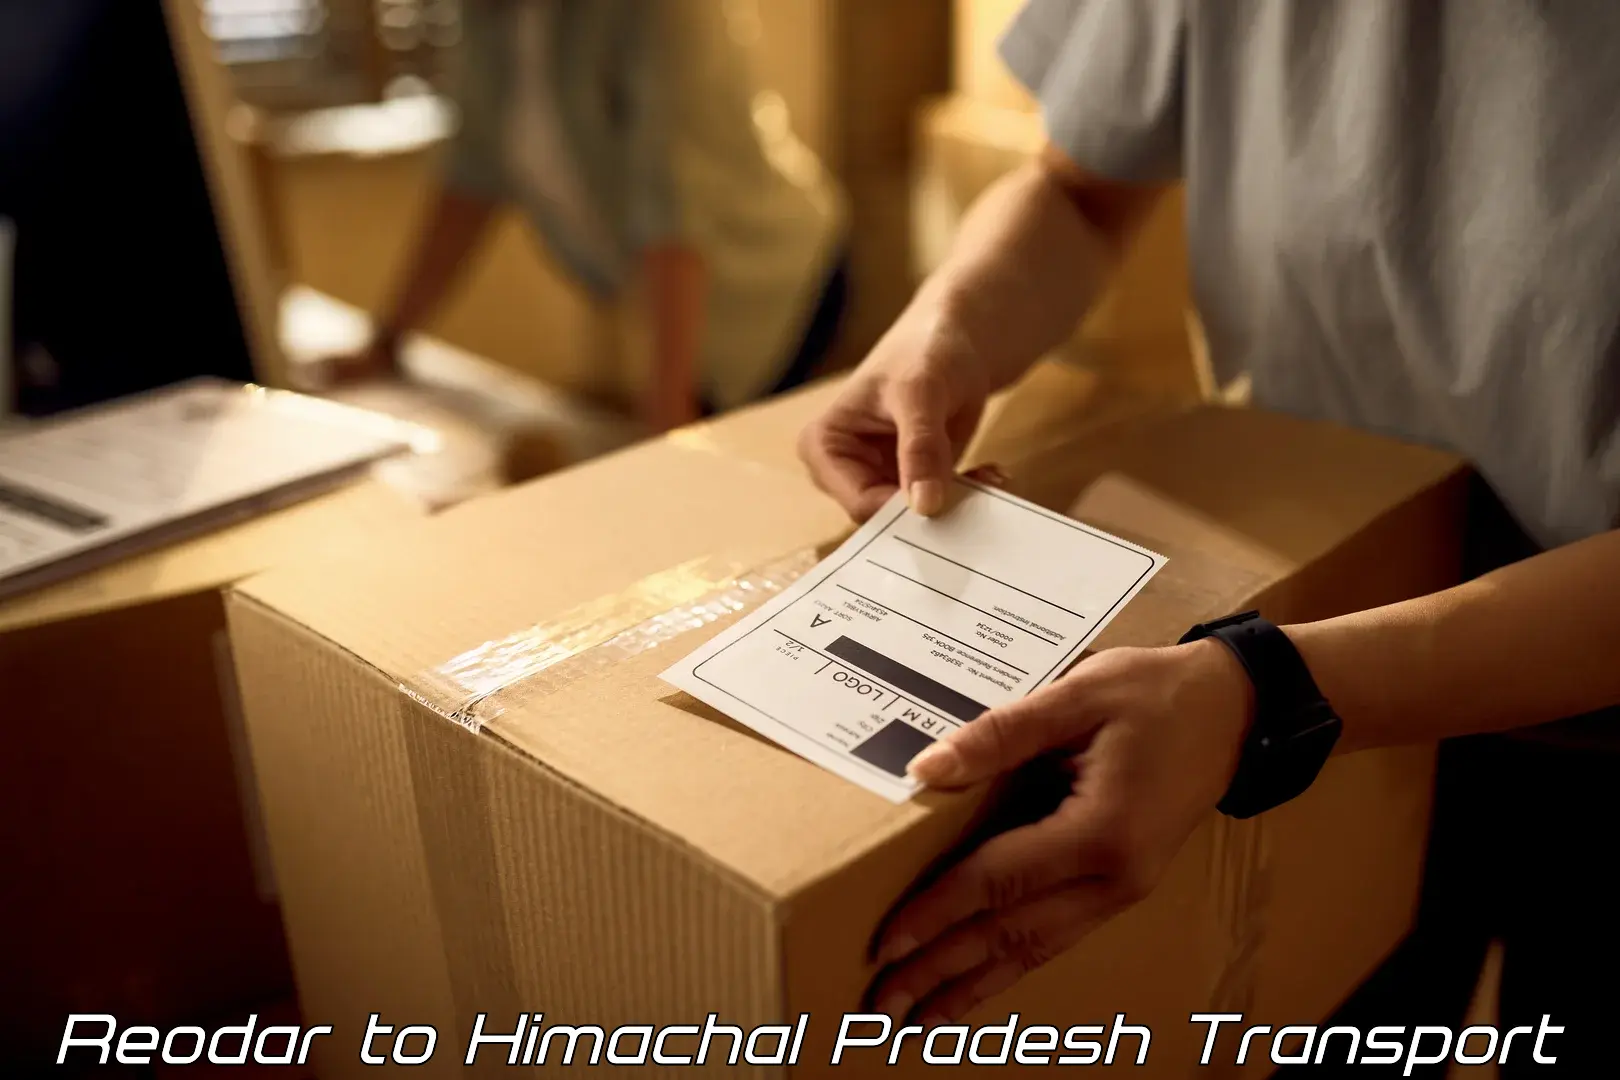 Two wheeler parcel service Reodar to Una Himachal Pradesh